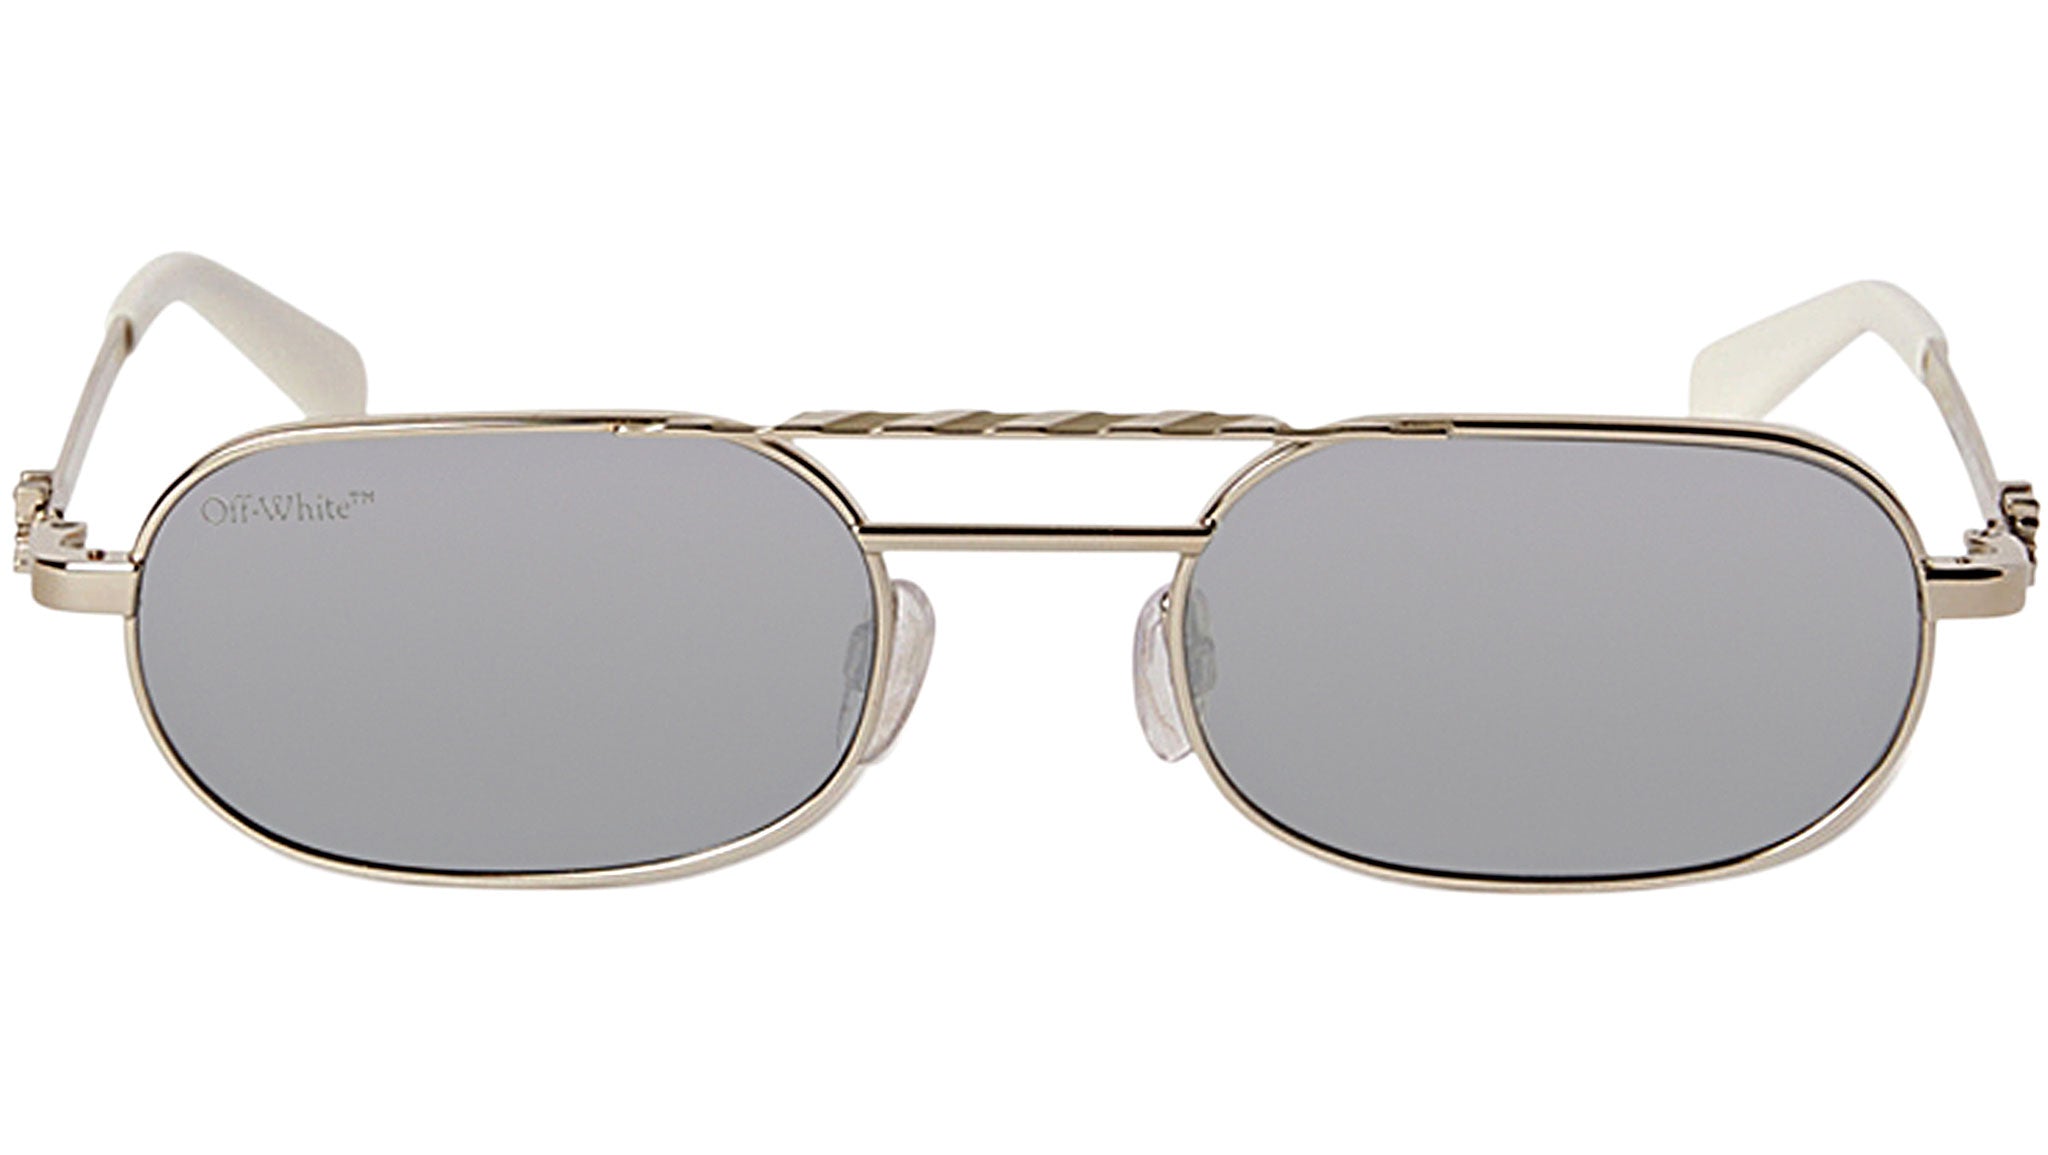 Off-White Baltimore Mirror Sunglasses Silver